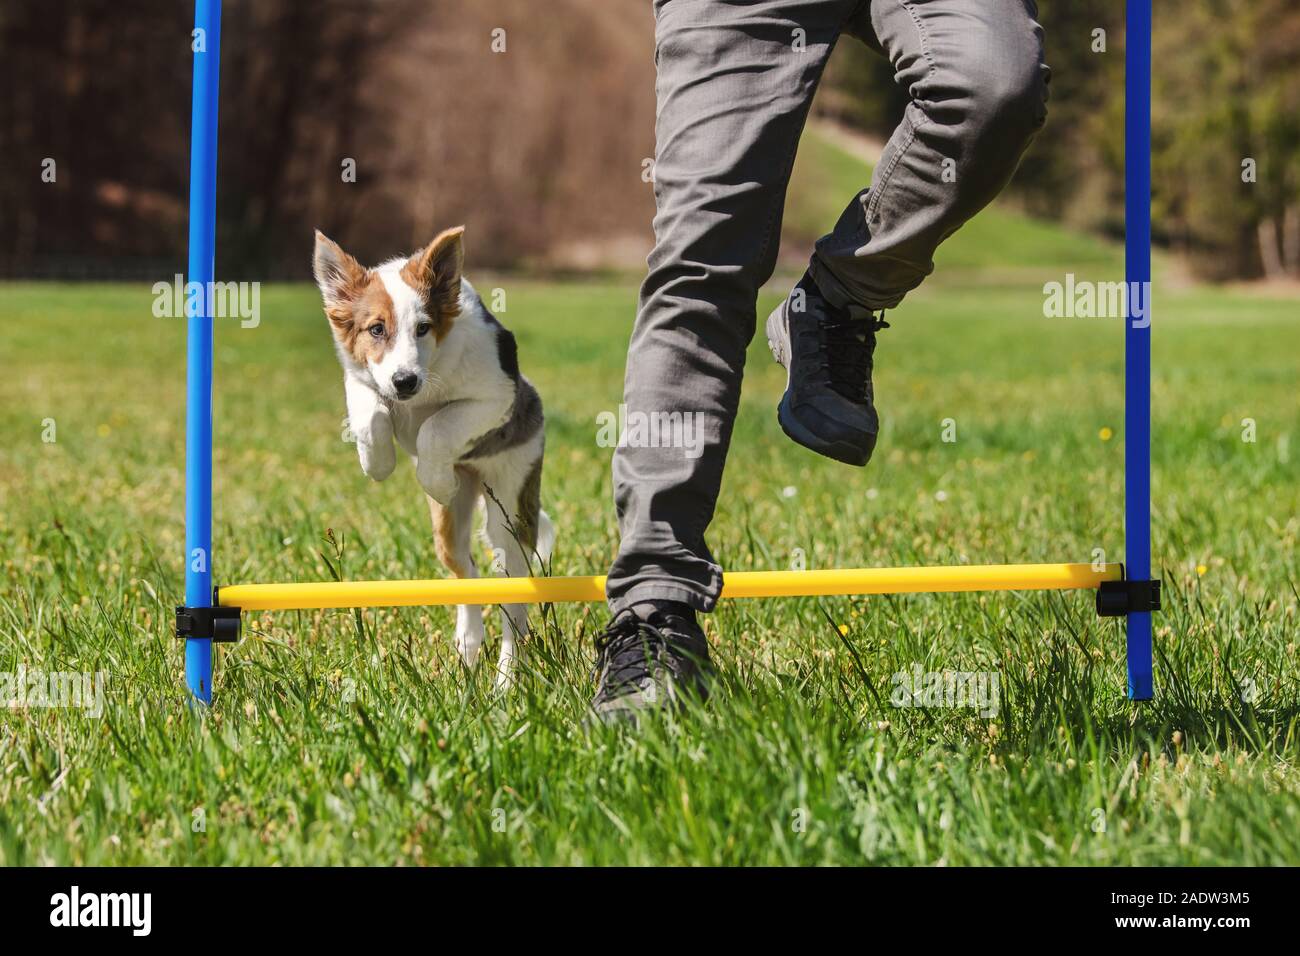 Agility Hund sport training mit einem Welpen Hund, Mensch und Welpe springen über Hindernisse Stockfoto